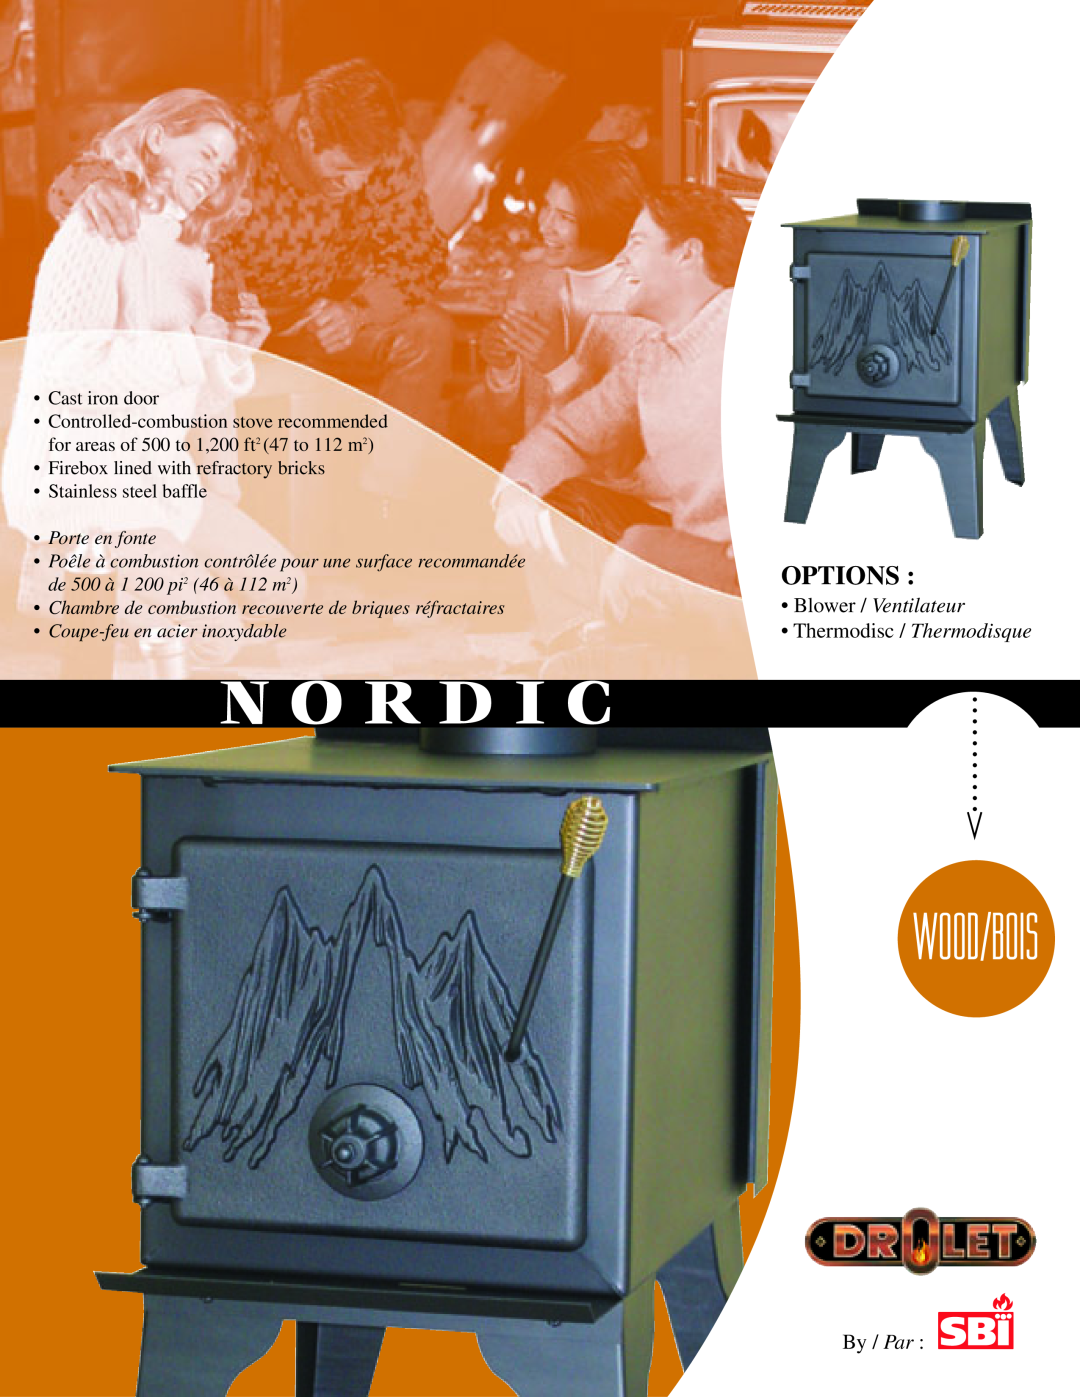 Drolet Nordic manual N O R D I C, Wood/Bois, Options, Blower / Ventilateur, Thermodisc / Thermodisque, By / Par 